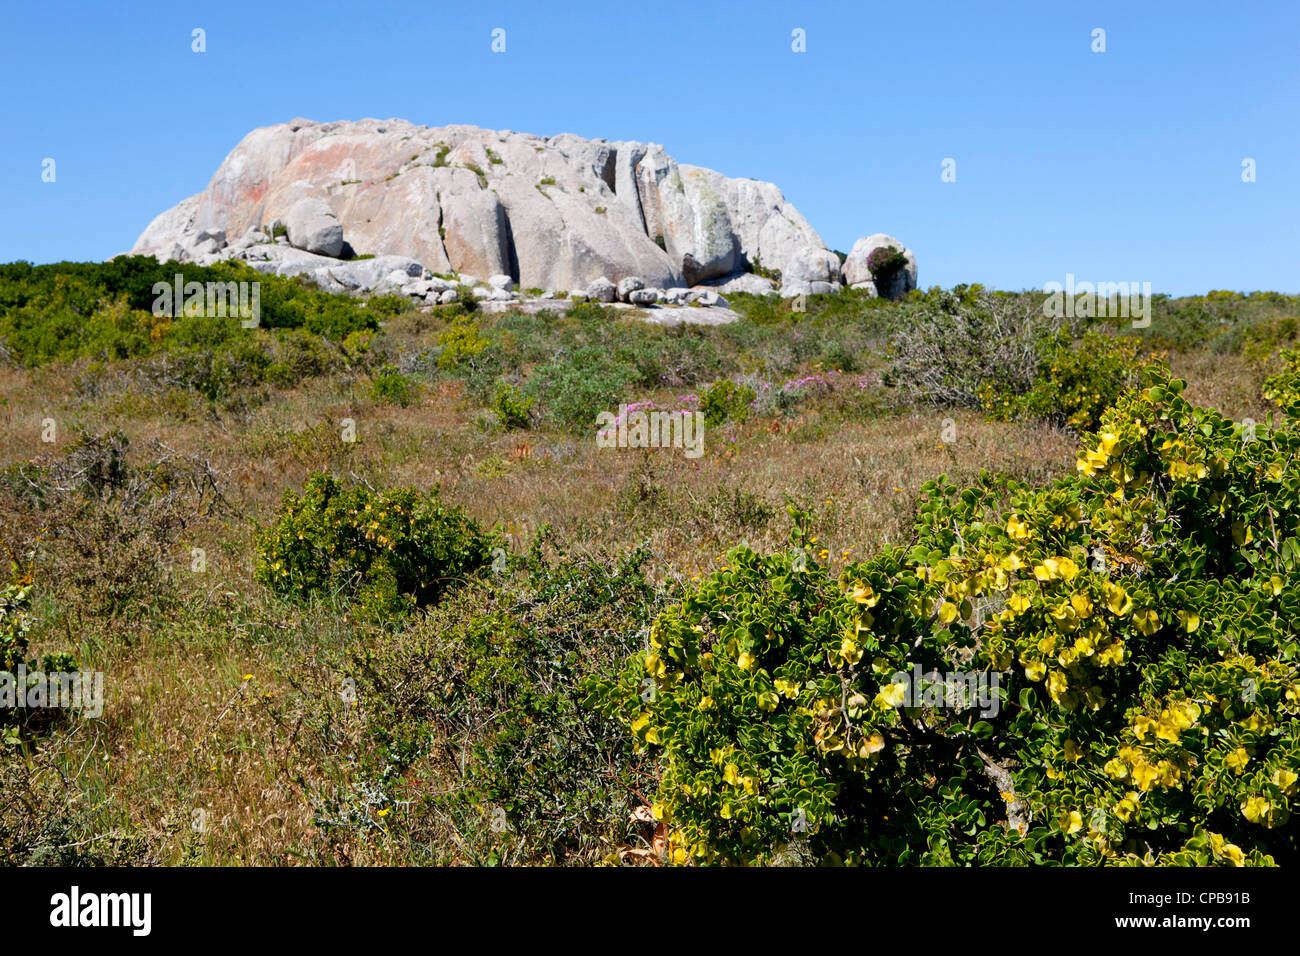 La molla africana di fiori selvatici, con grandi formazioni rocciose in background presso la West Coast National Park, Sud Africa Foto Stock